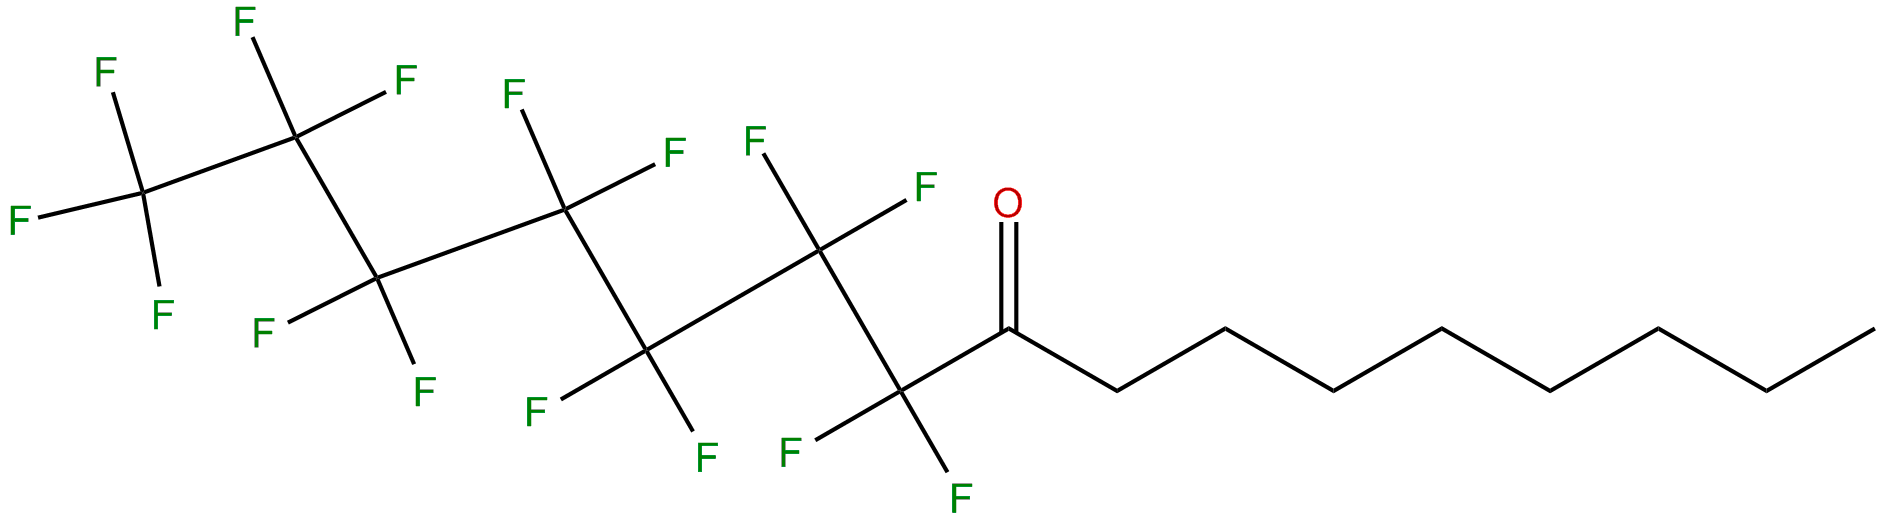 Image of 1,1,1,2,2,3,3,4,4,5,5,6,6,7,7-pentadecafluoro-8-hexadecanone